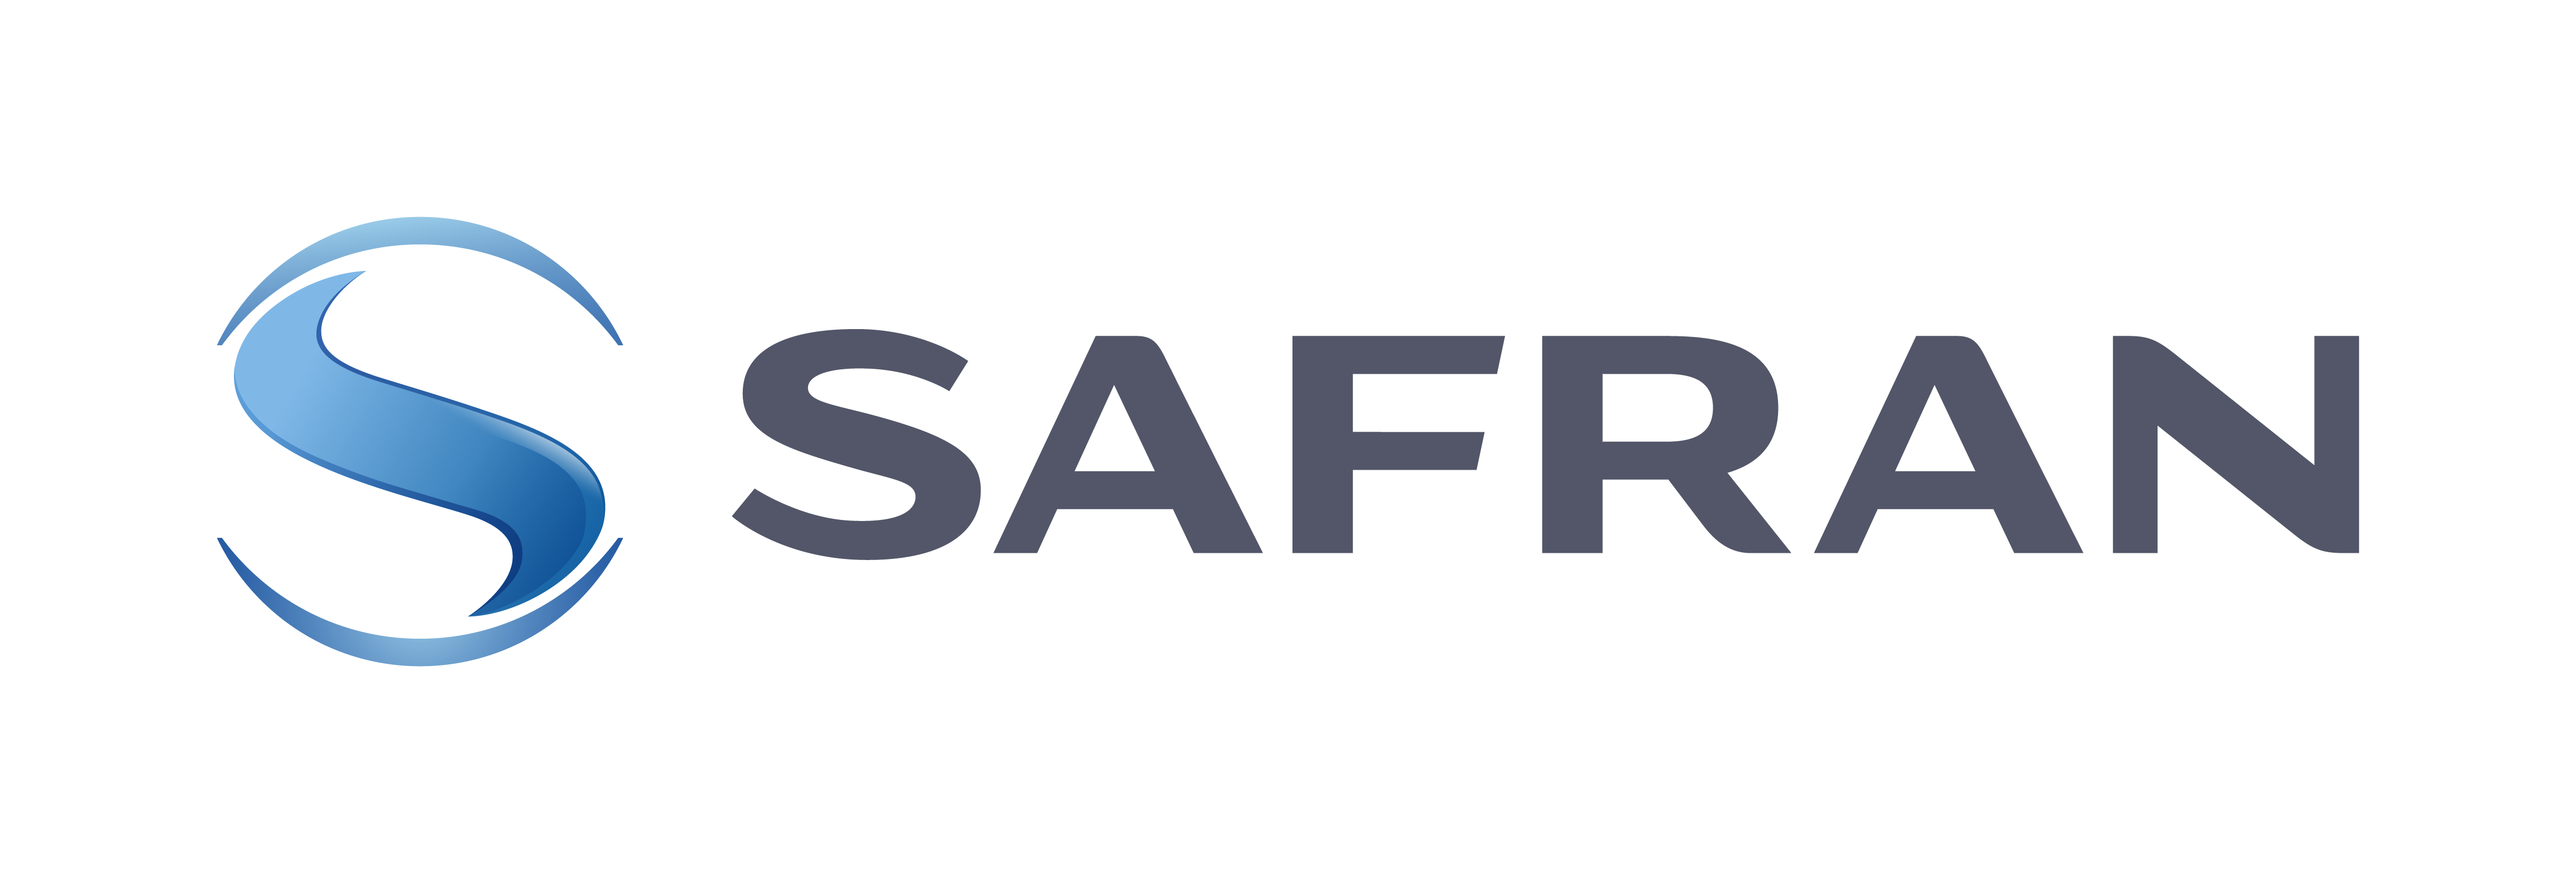 Safran Data Systems